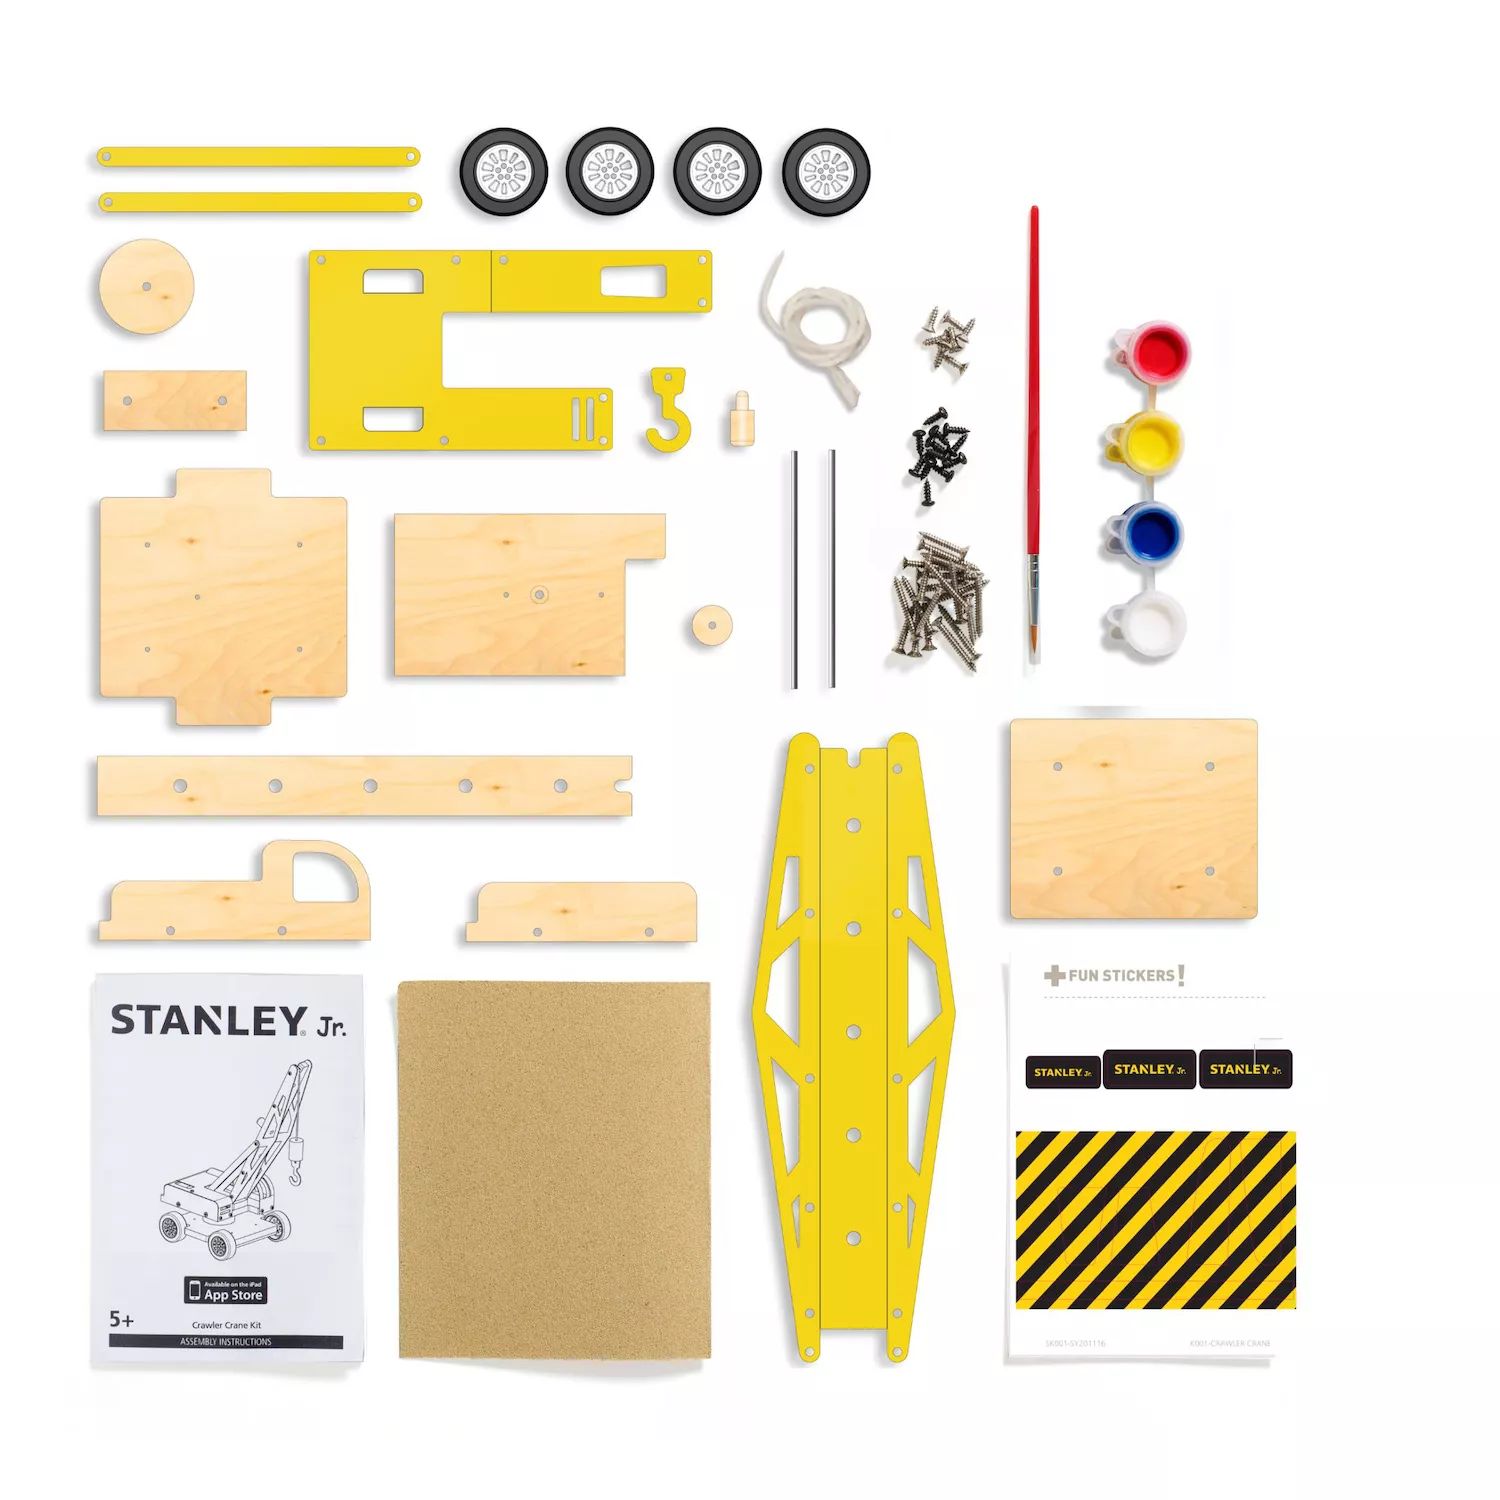 Стэнли-младший — соберите свой собственный комплект подъемного крана RED TOOL BOX stanley 19 tool box